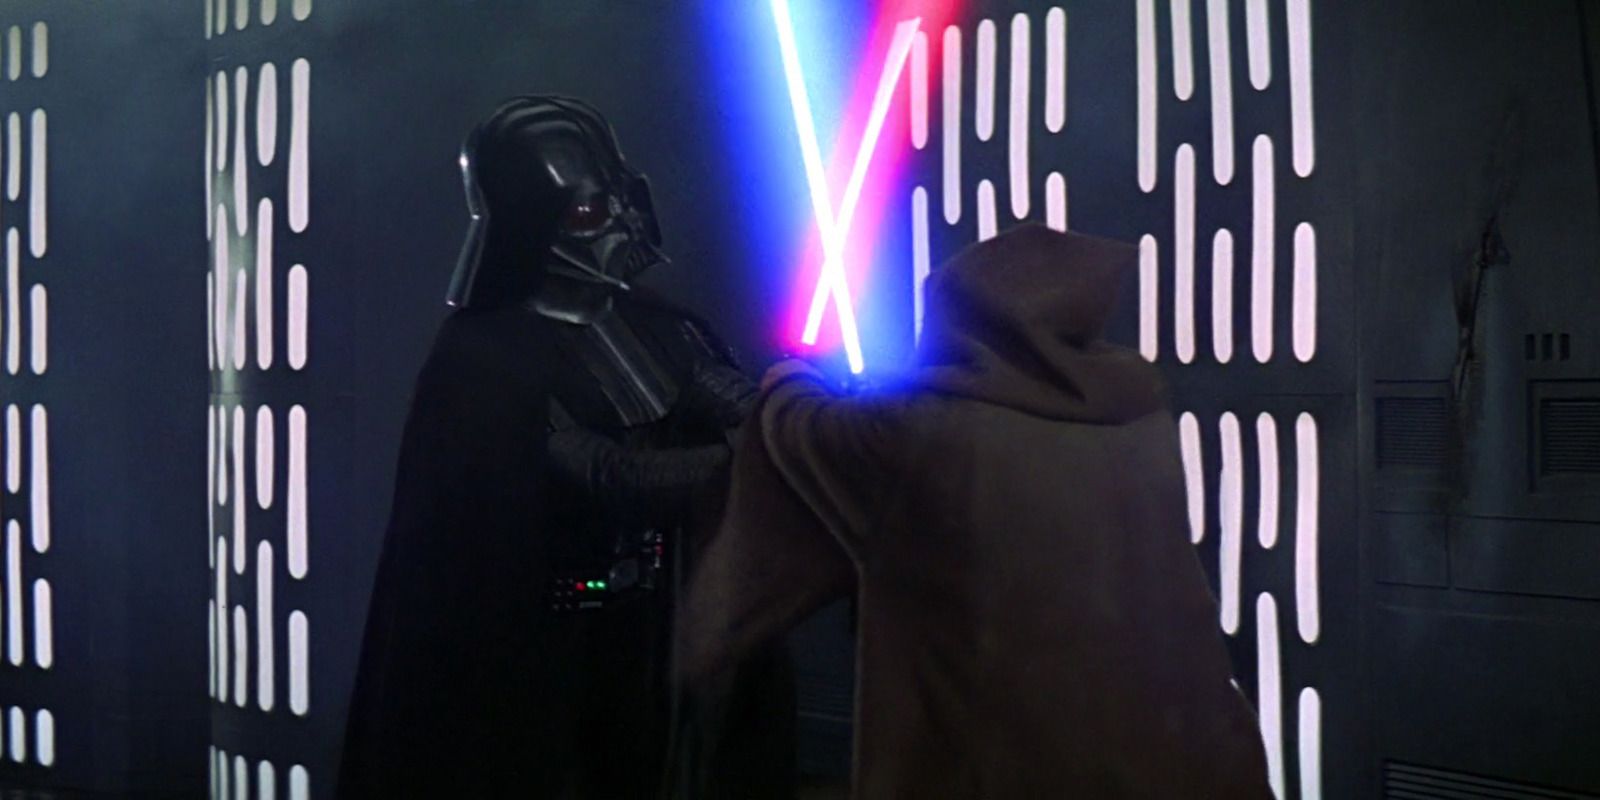 Darth Vader lightsaber fight with Obi-Wan Kenobi in Star Wars